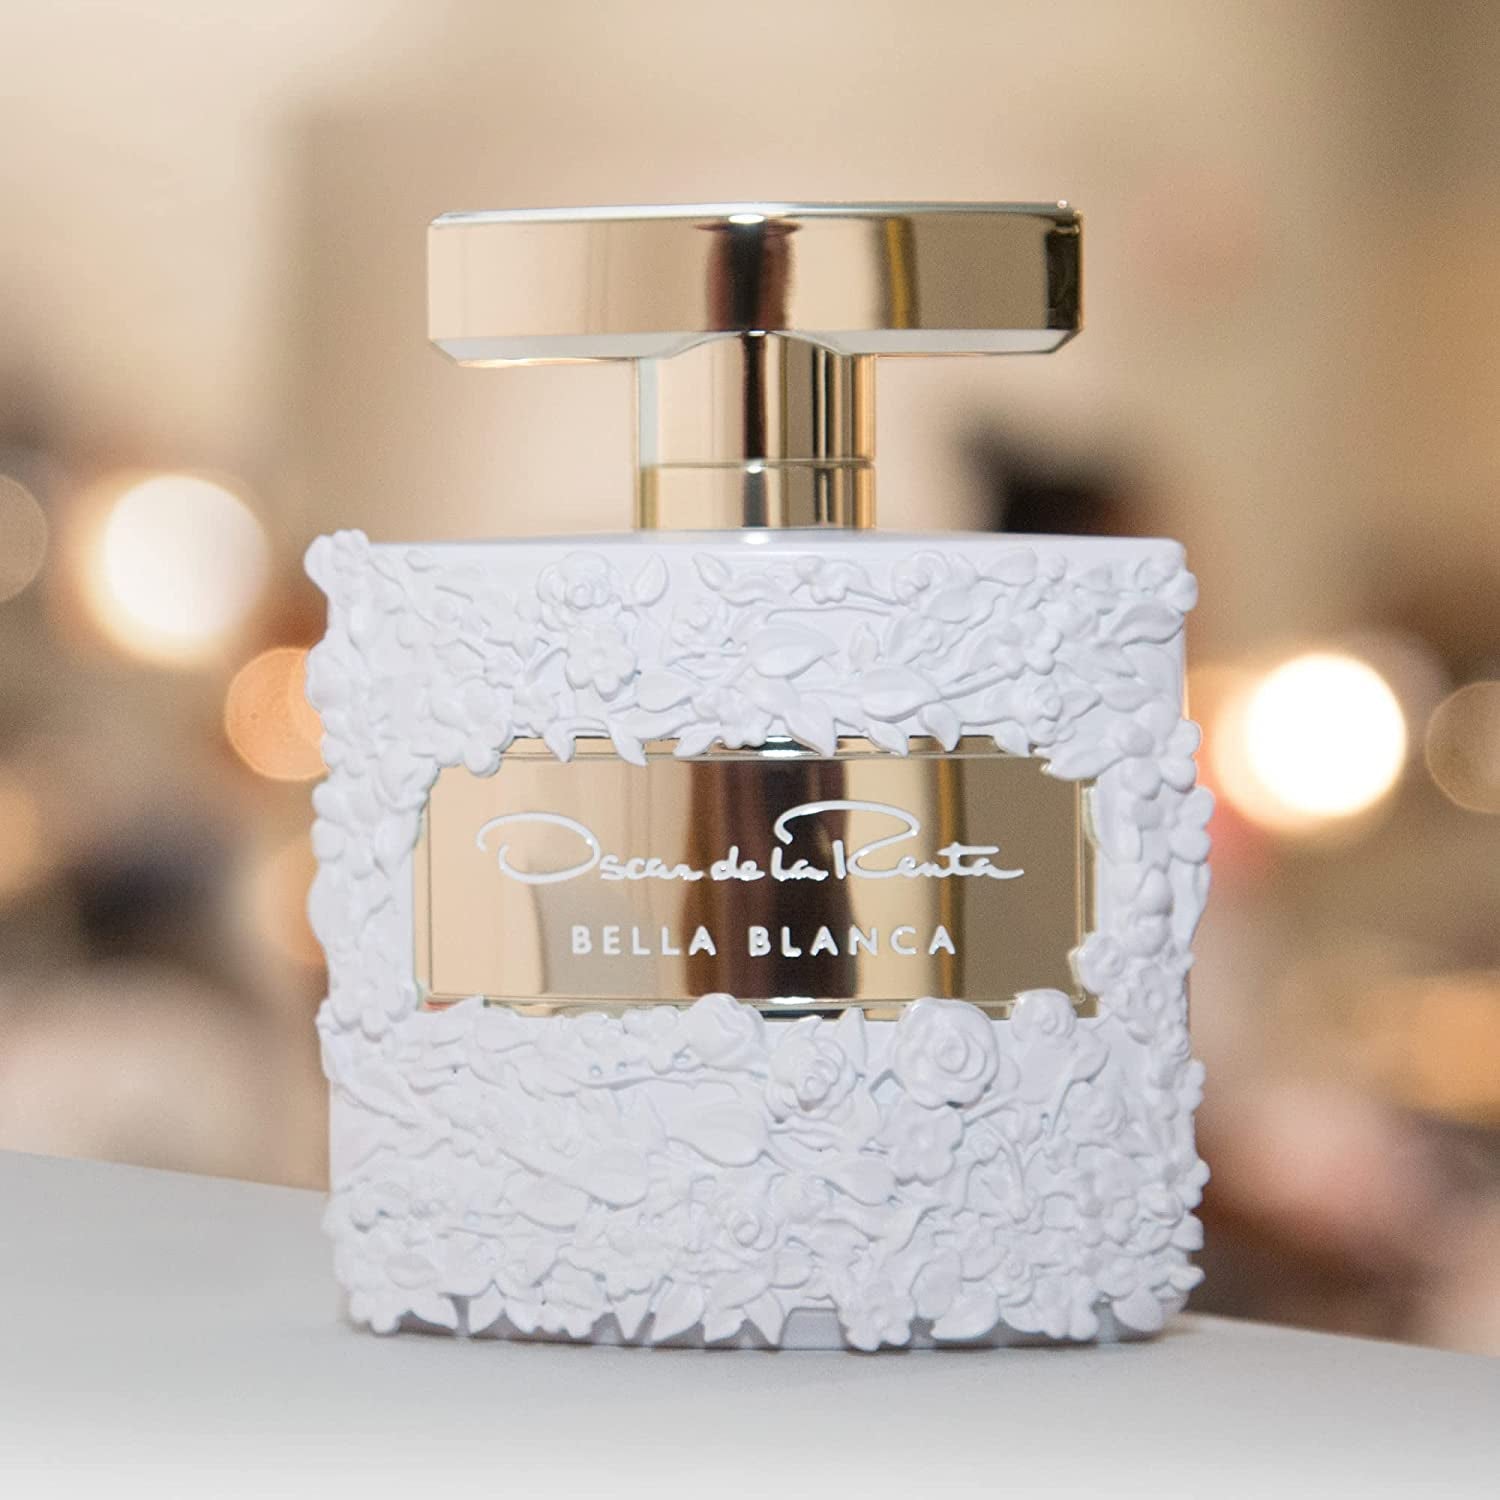 Oscar De La Renta Bella Blanca Eau de Parfum Perfume Spray For Women